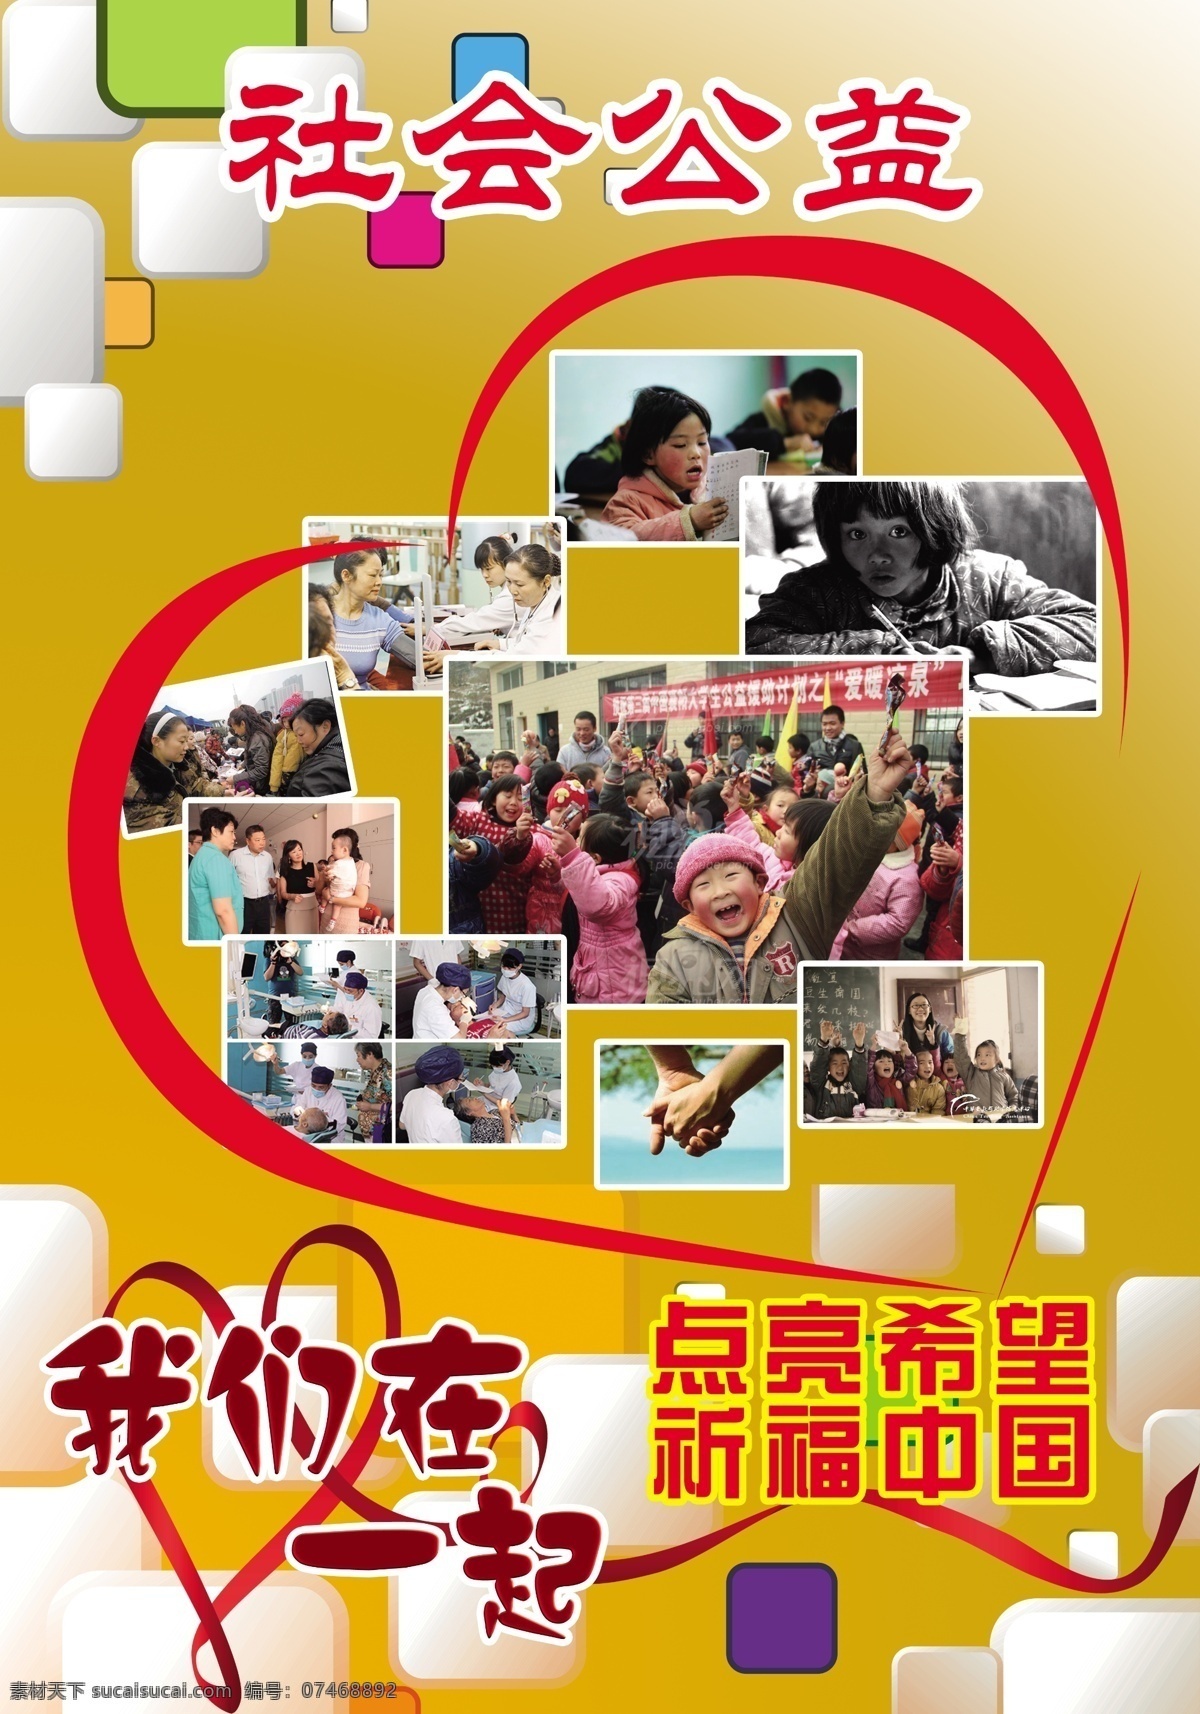 公益 海报 点亮希望 黄色 立体方块背景 心形 祈福中国 公益救援图片 原创设计 原创海报